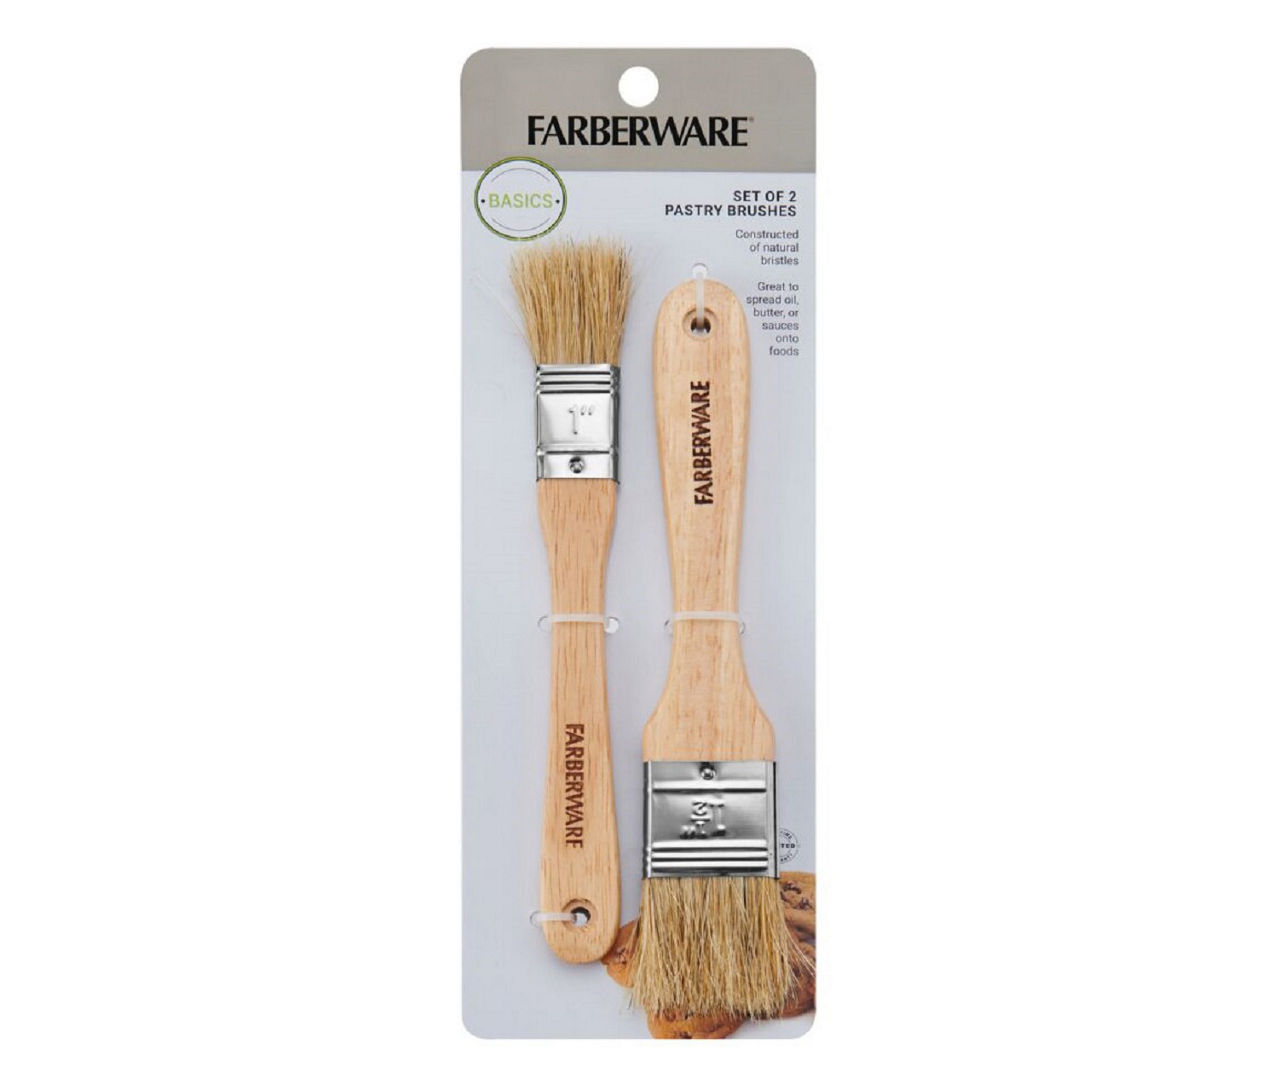 Farberware Basting Brush